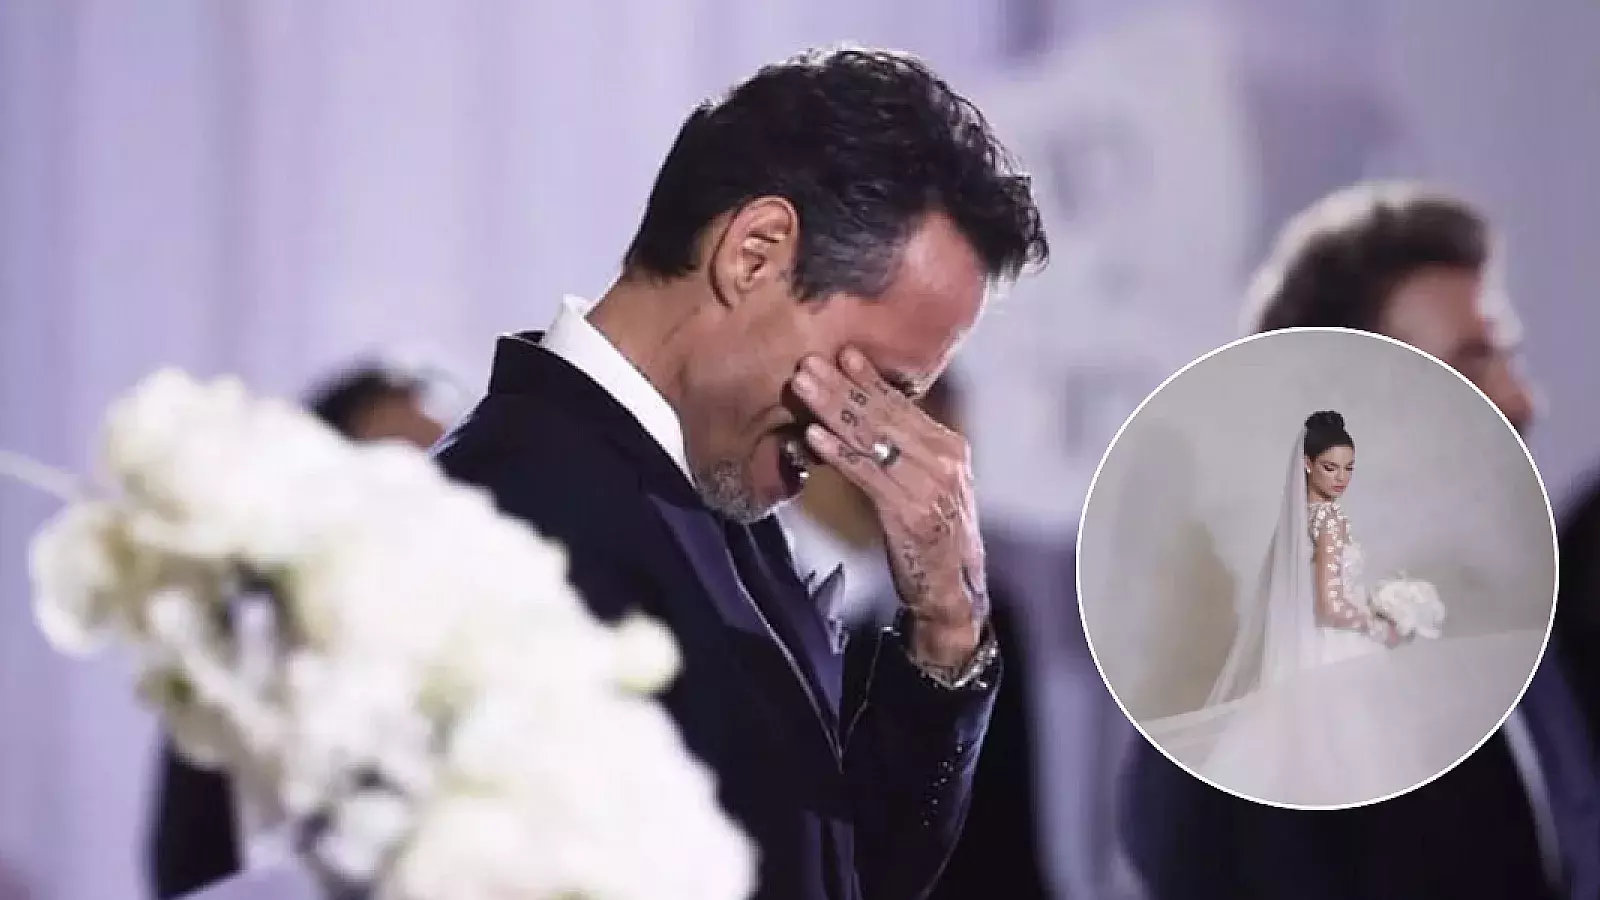 ¡Marc Anthony rompió en llanto cuando vio a Nadia vestida de novia! Ella compartió el video